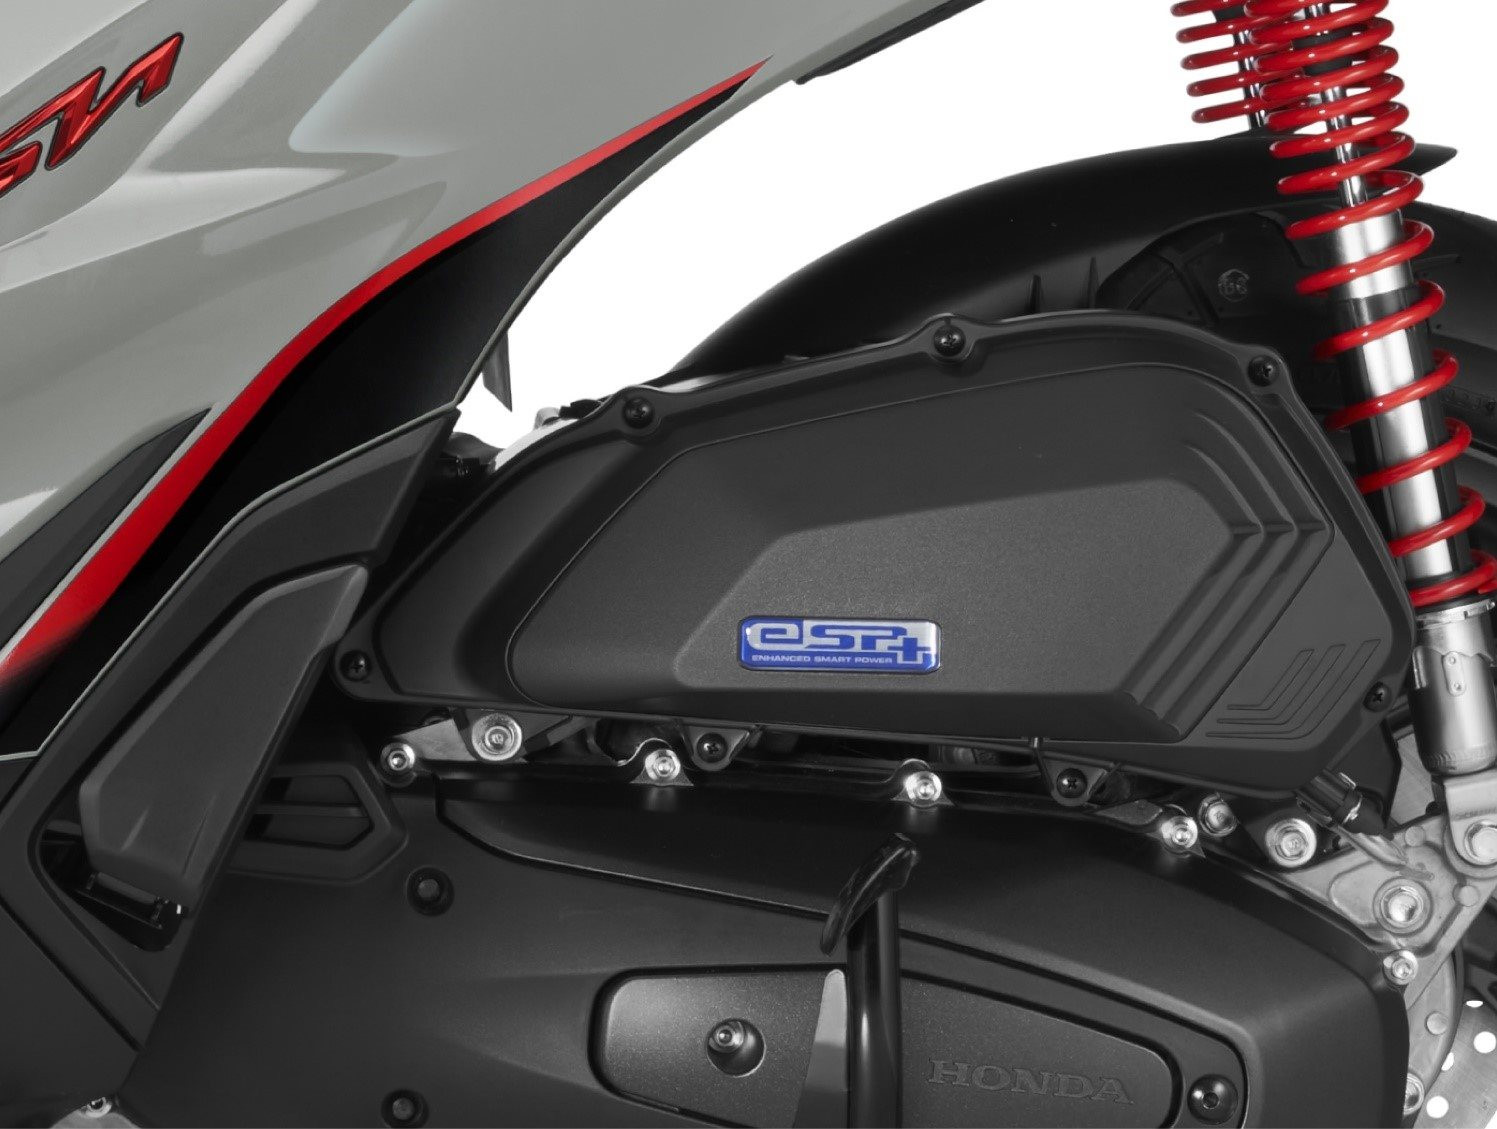 Honda Sh 125i/160i mới ra mắt - phối màu mới, giá khởi điểm gần 74 triệu đồng - Ảnh 2.